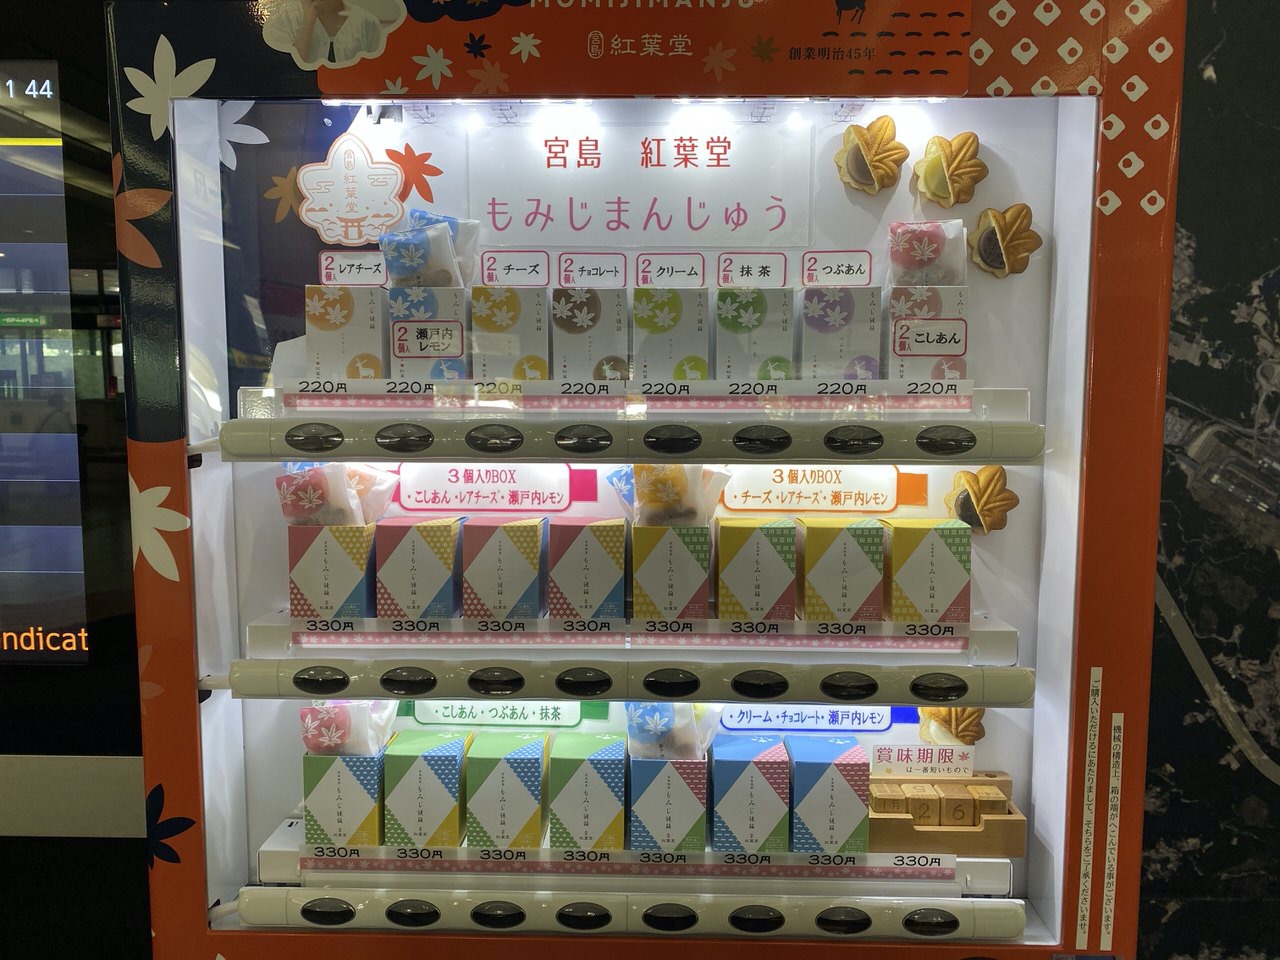 広島空港で紅葉堂のもみじ饅頭の自動販売機を発見